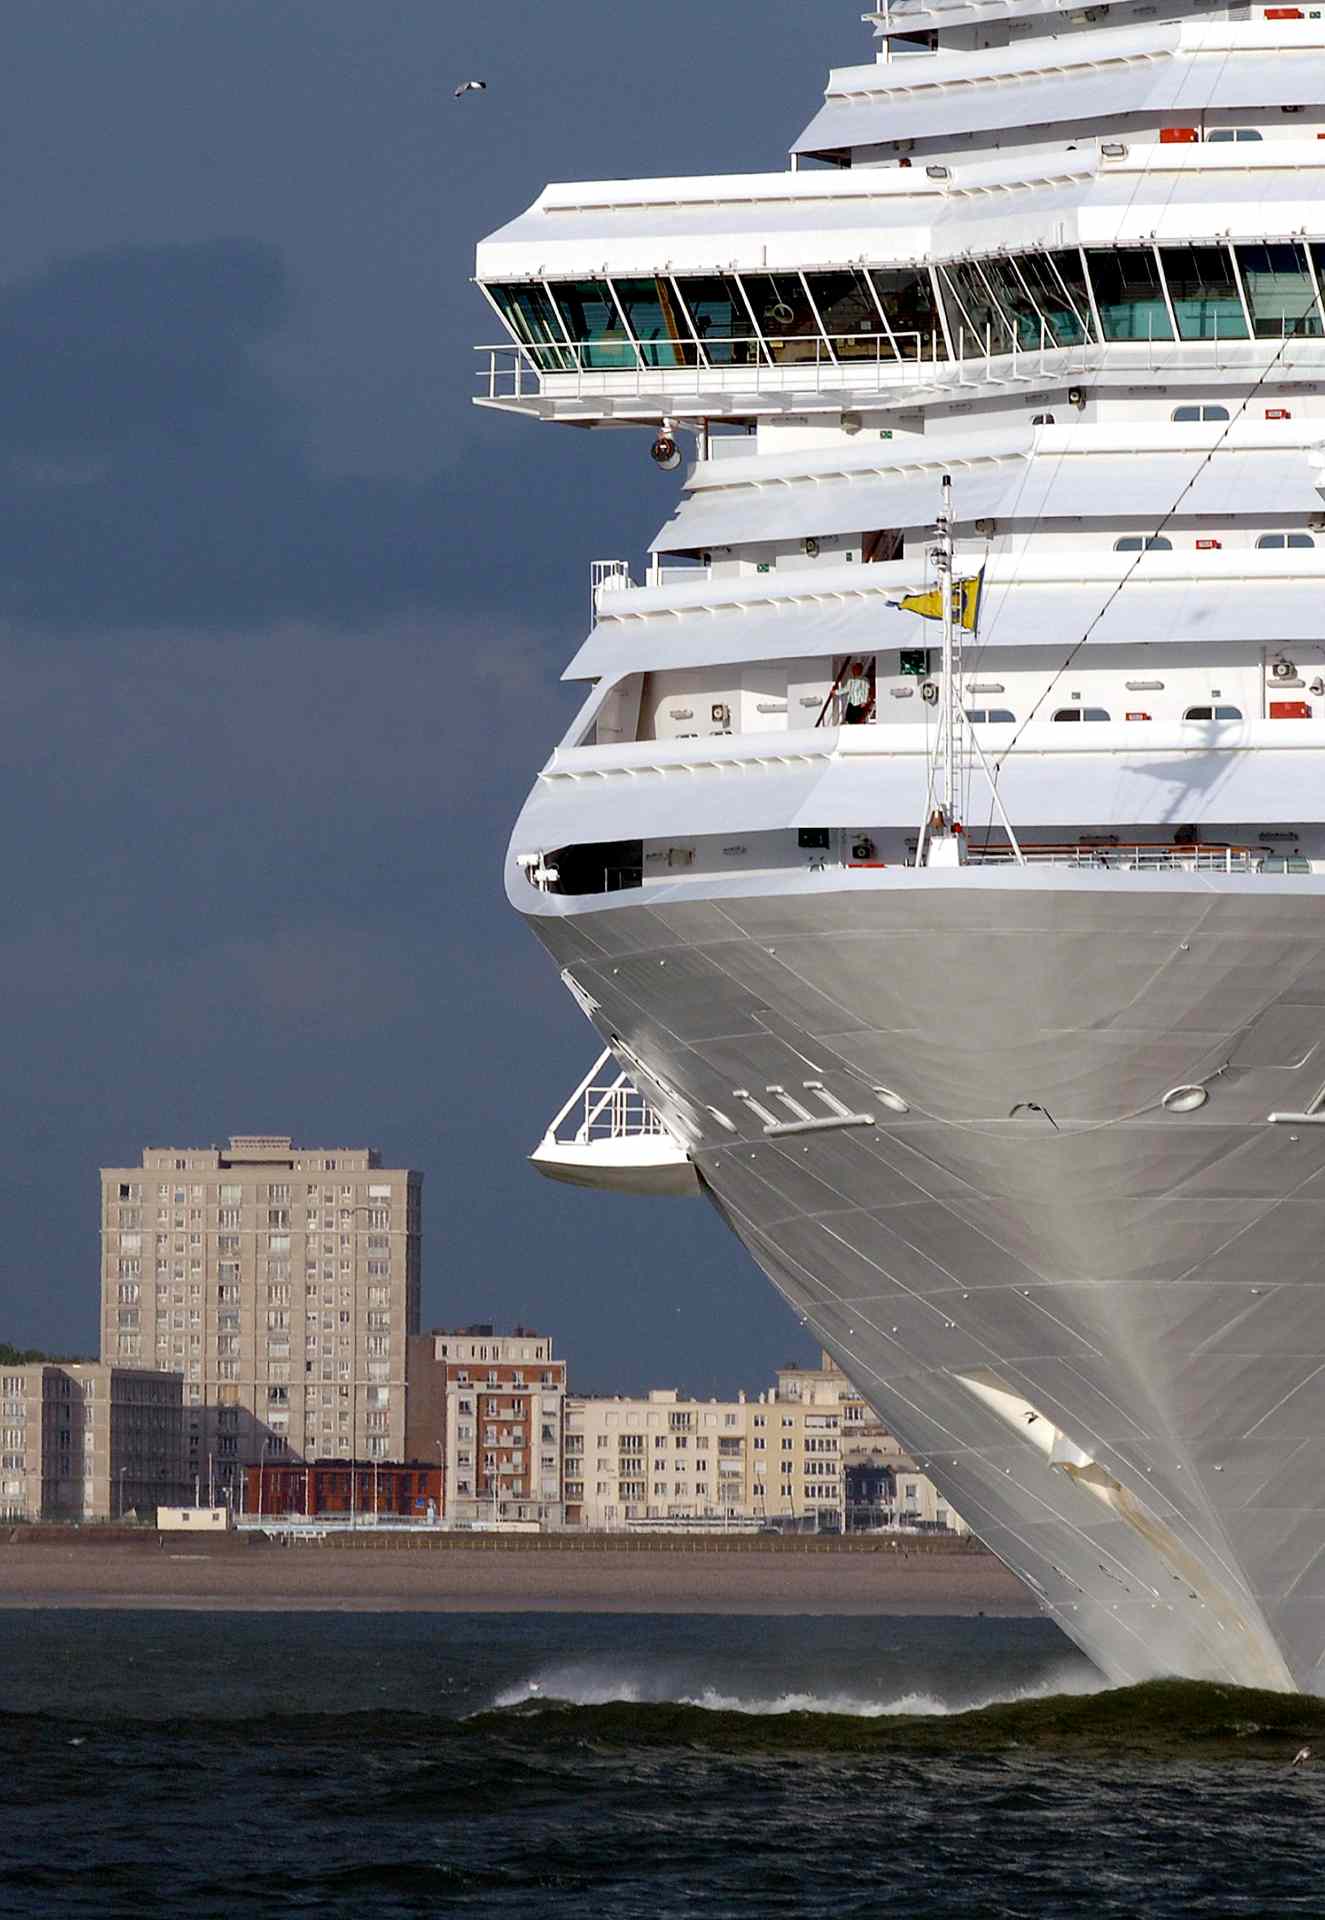 Managing layup of cruise ships